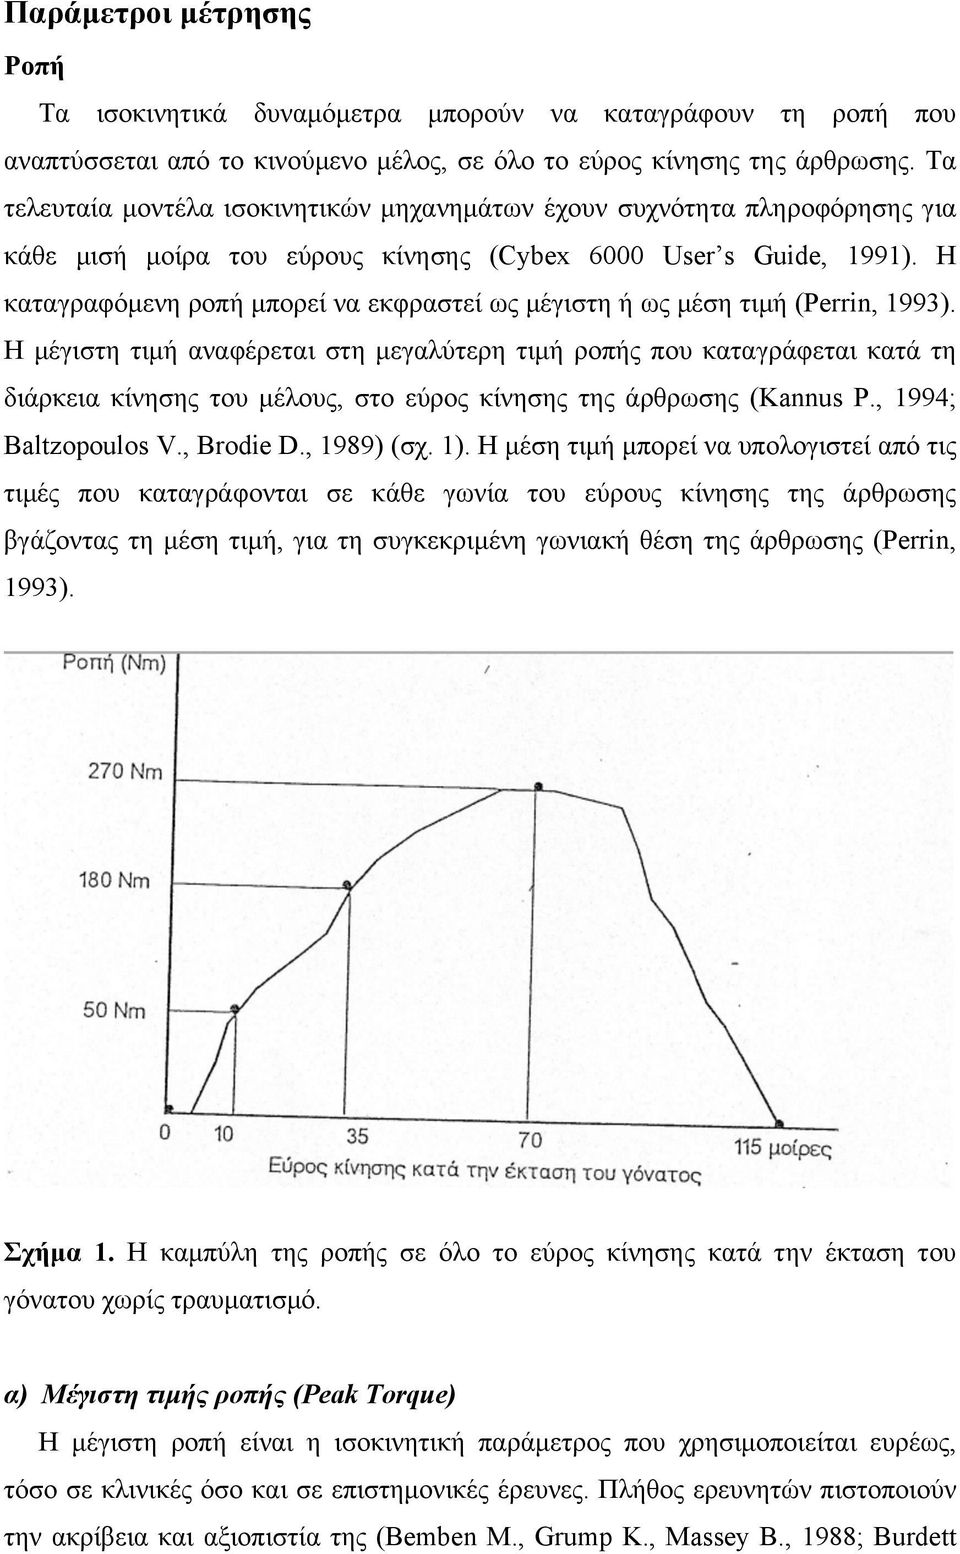 Η καταγραφόµενη ροπή µπορεί να εκφραστεί ως µέγιστη ή ως µέση τιµή (Perrin, 1993).